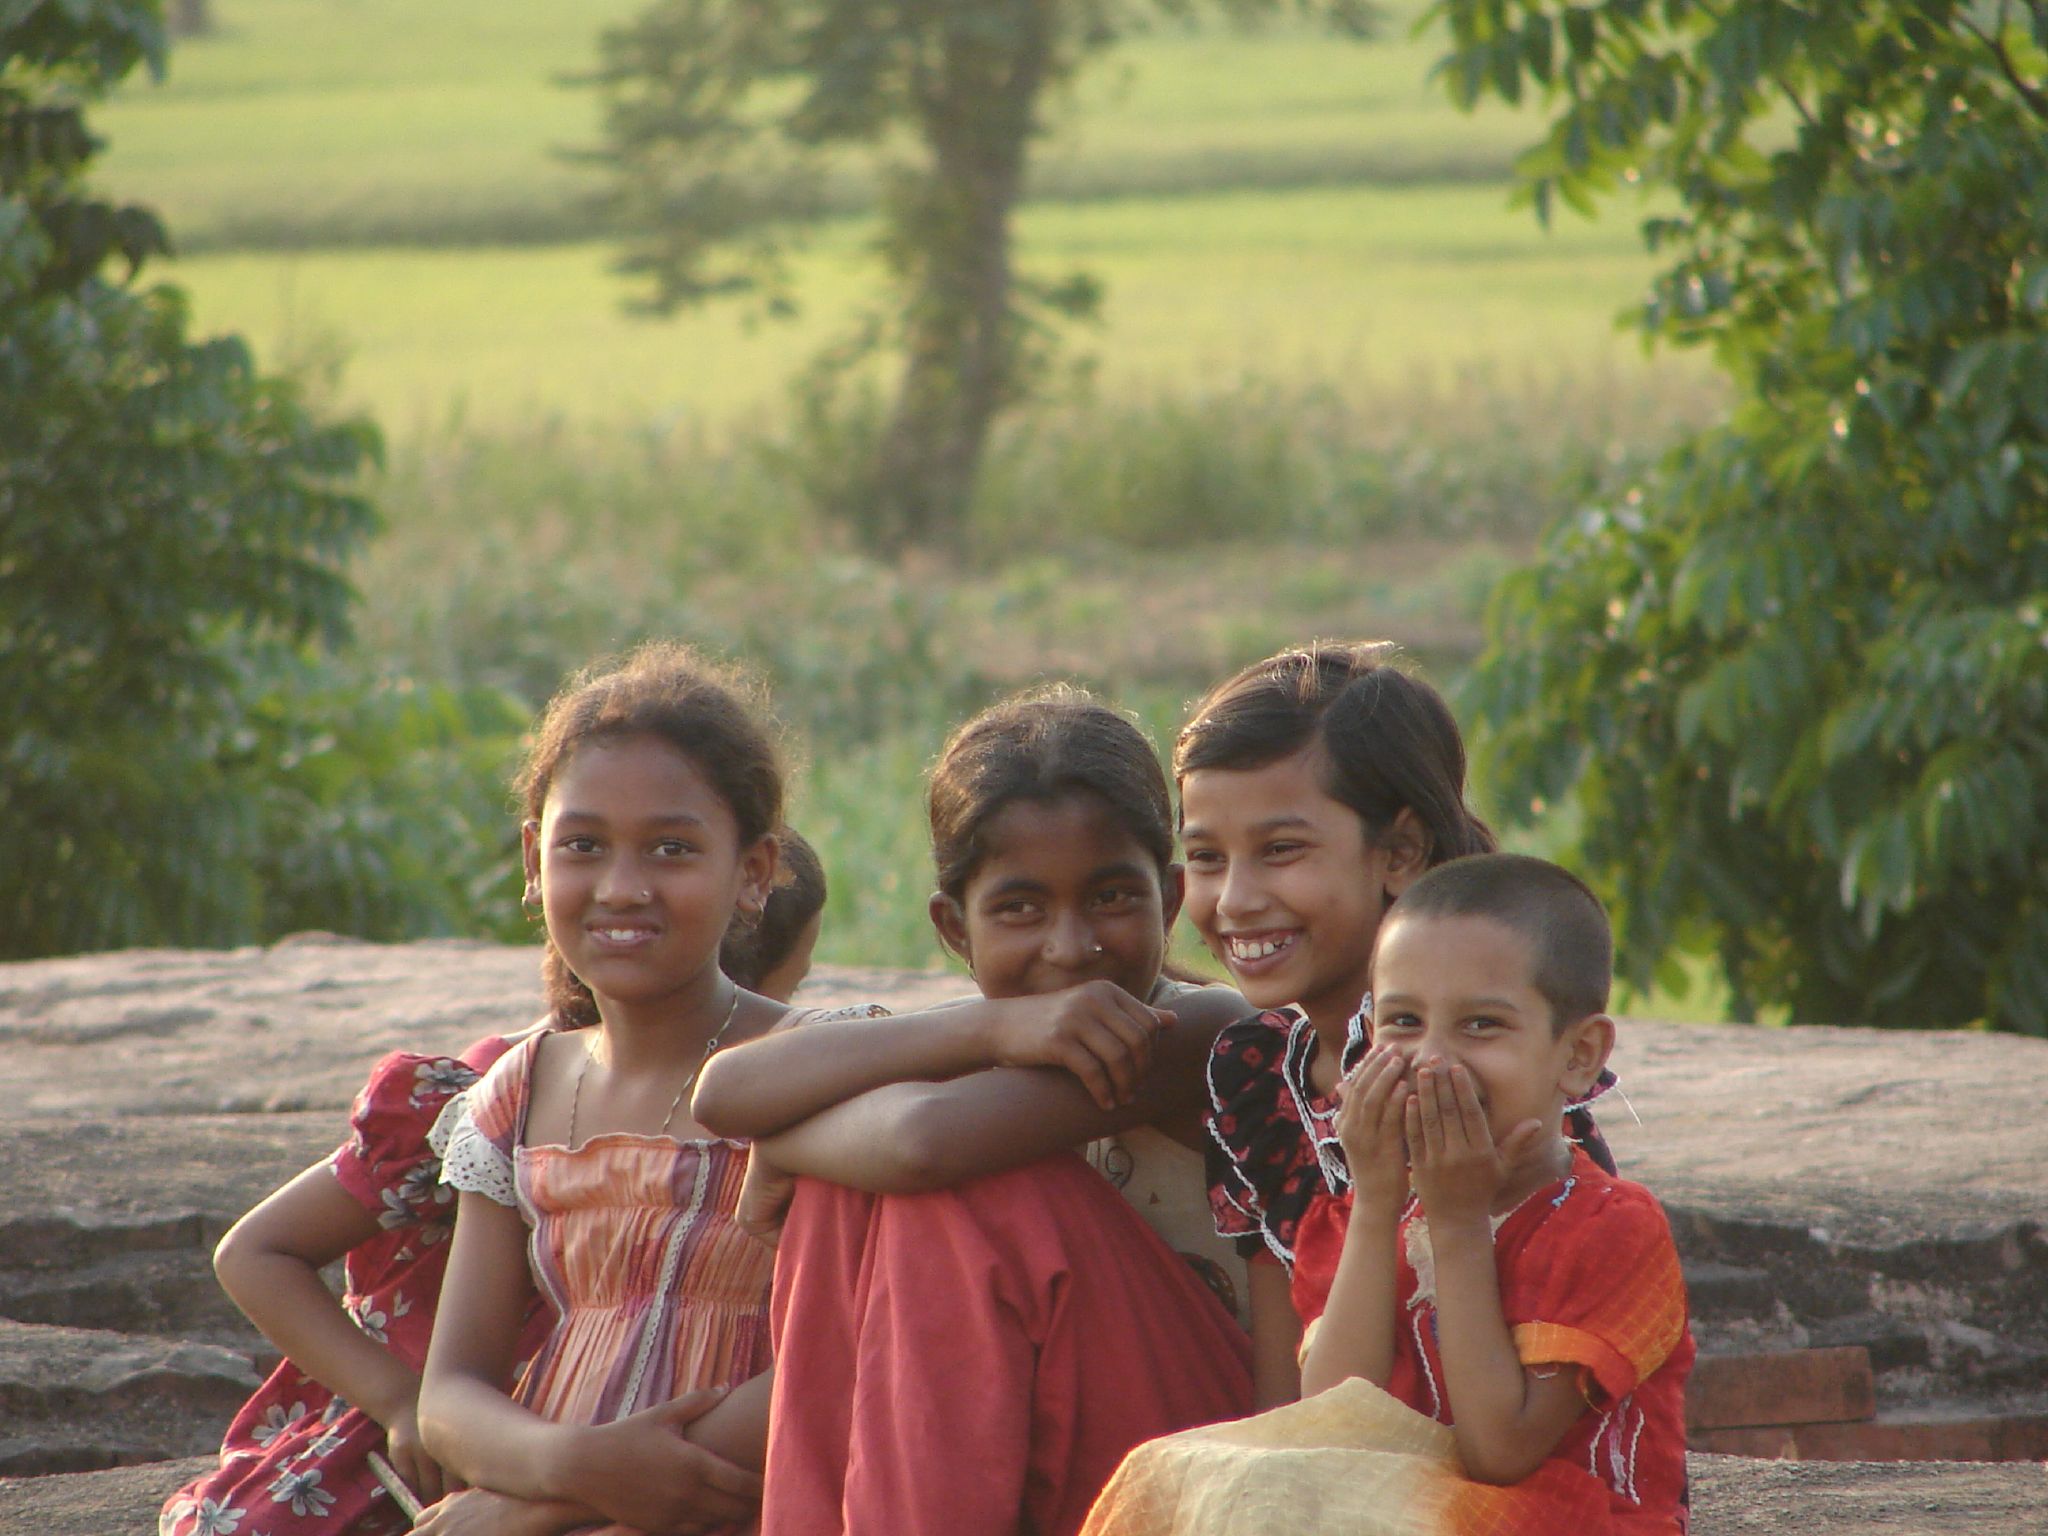 La paz comienza con una sonrisa, niños en Bangladesh, mayo de 2008 (wikimedia.org)